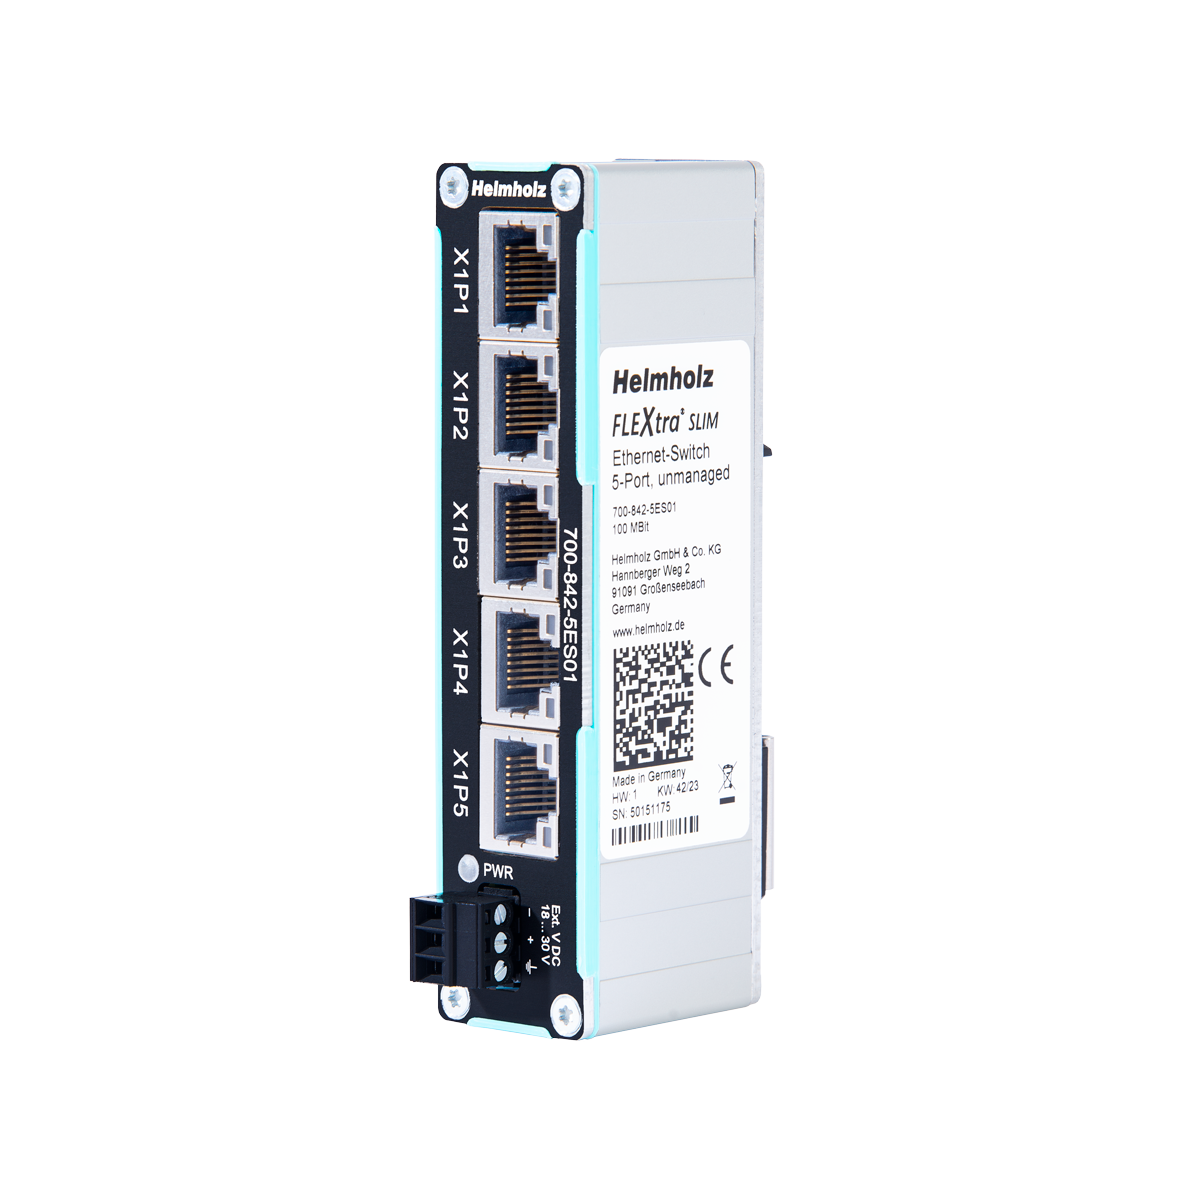 Helmholz Flextra Slim Ethernet Switch 5x RJ45 10/100 Mbit 700-842-5ES01